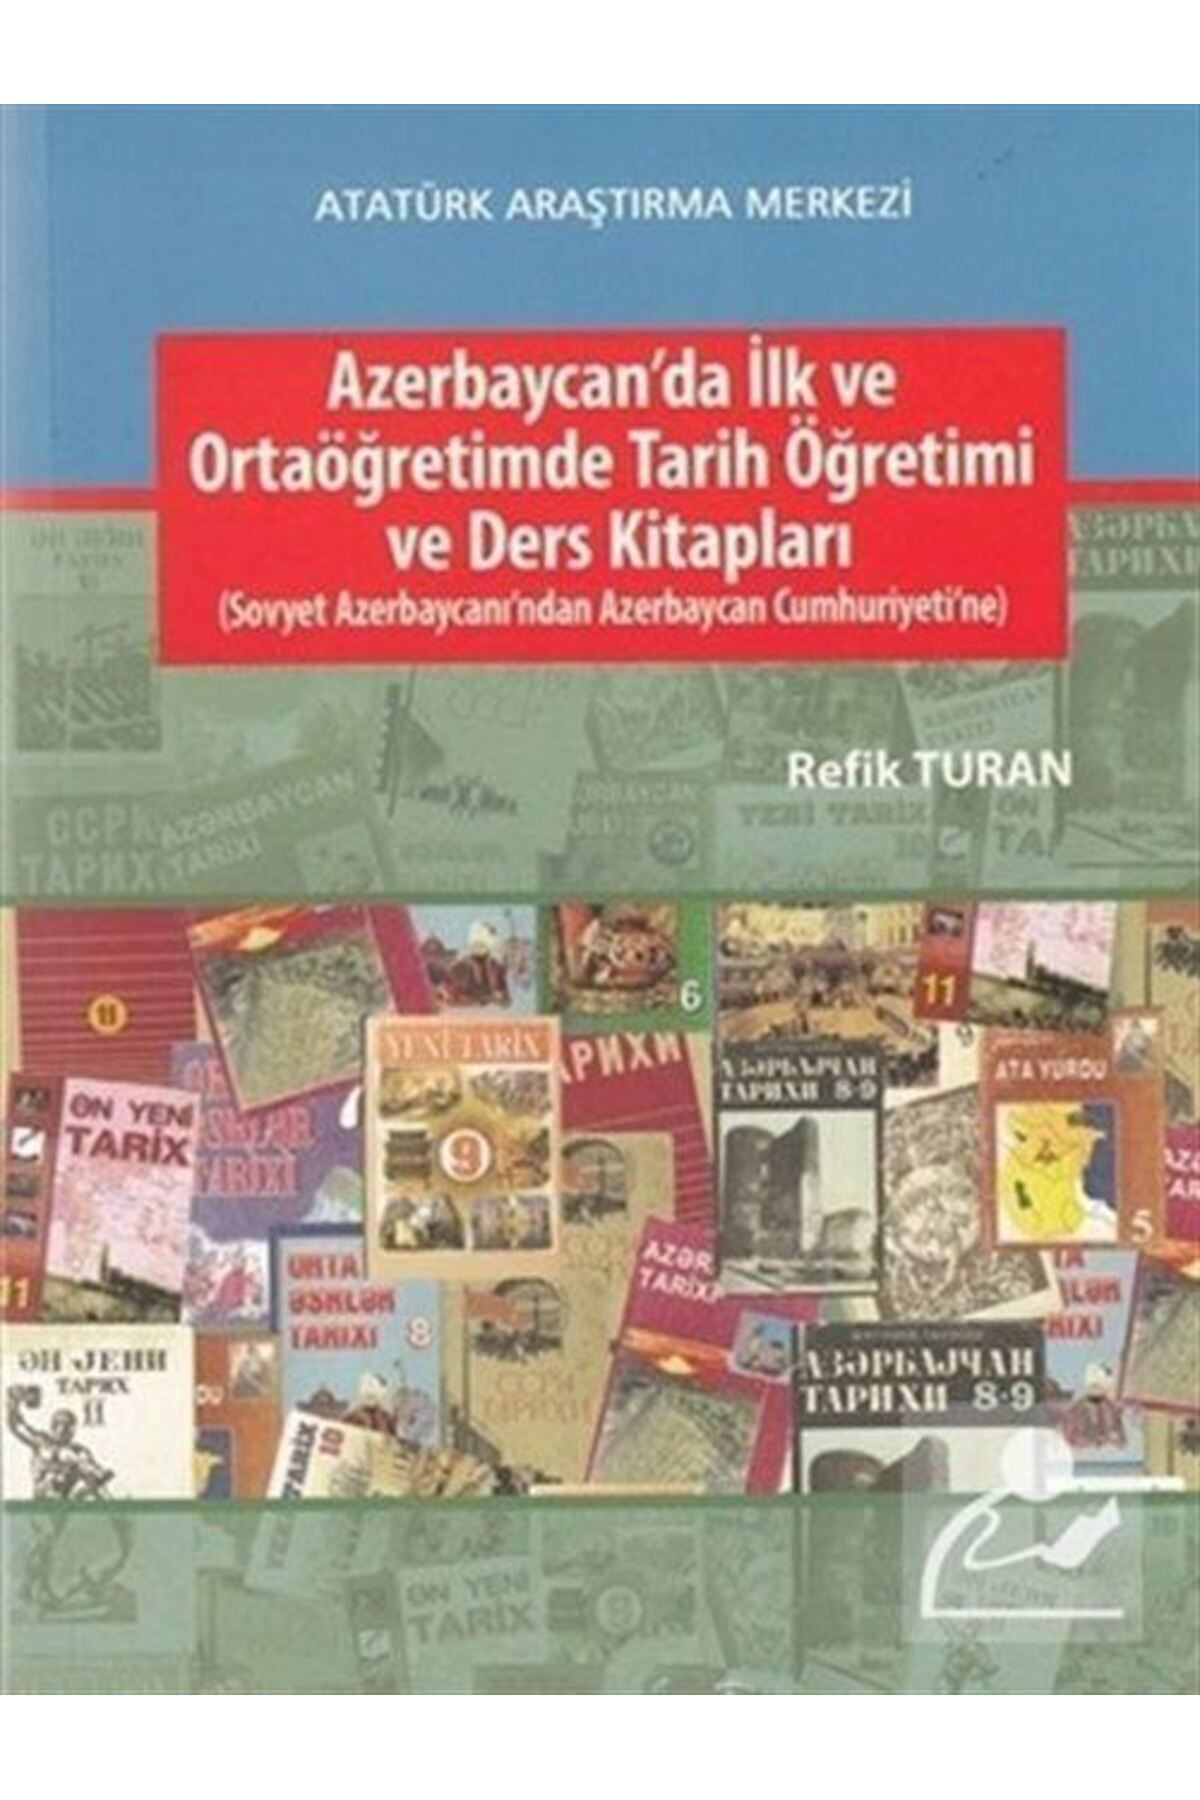 Atatürk Araştırma Merkezi Azerbaycan'da Ilk Ve Ortaöğretimde Tarih Öğretimi Ve Ders Kitapları